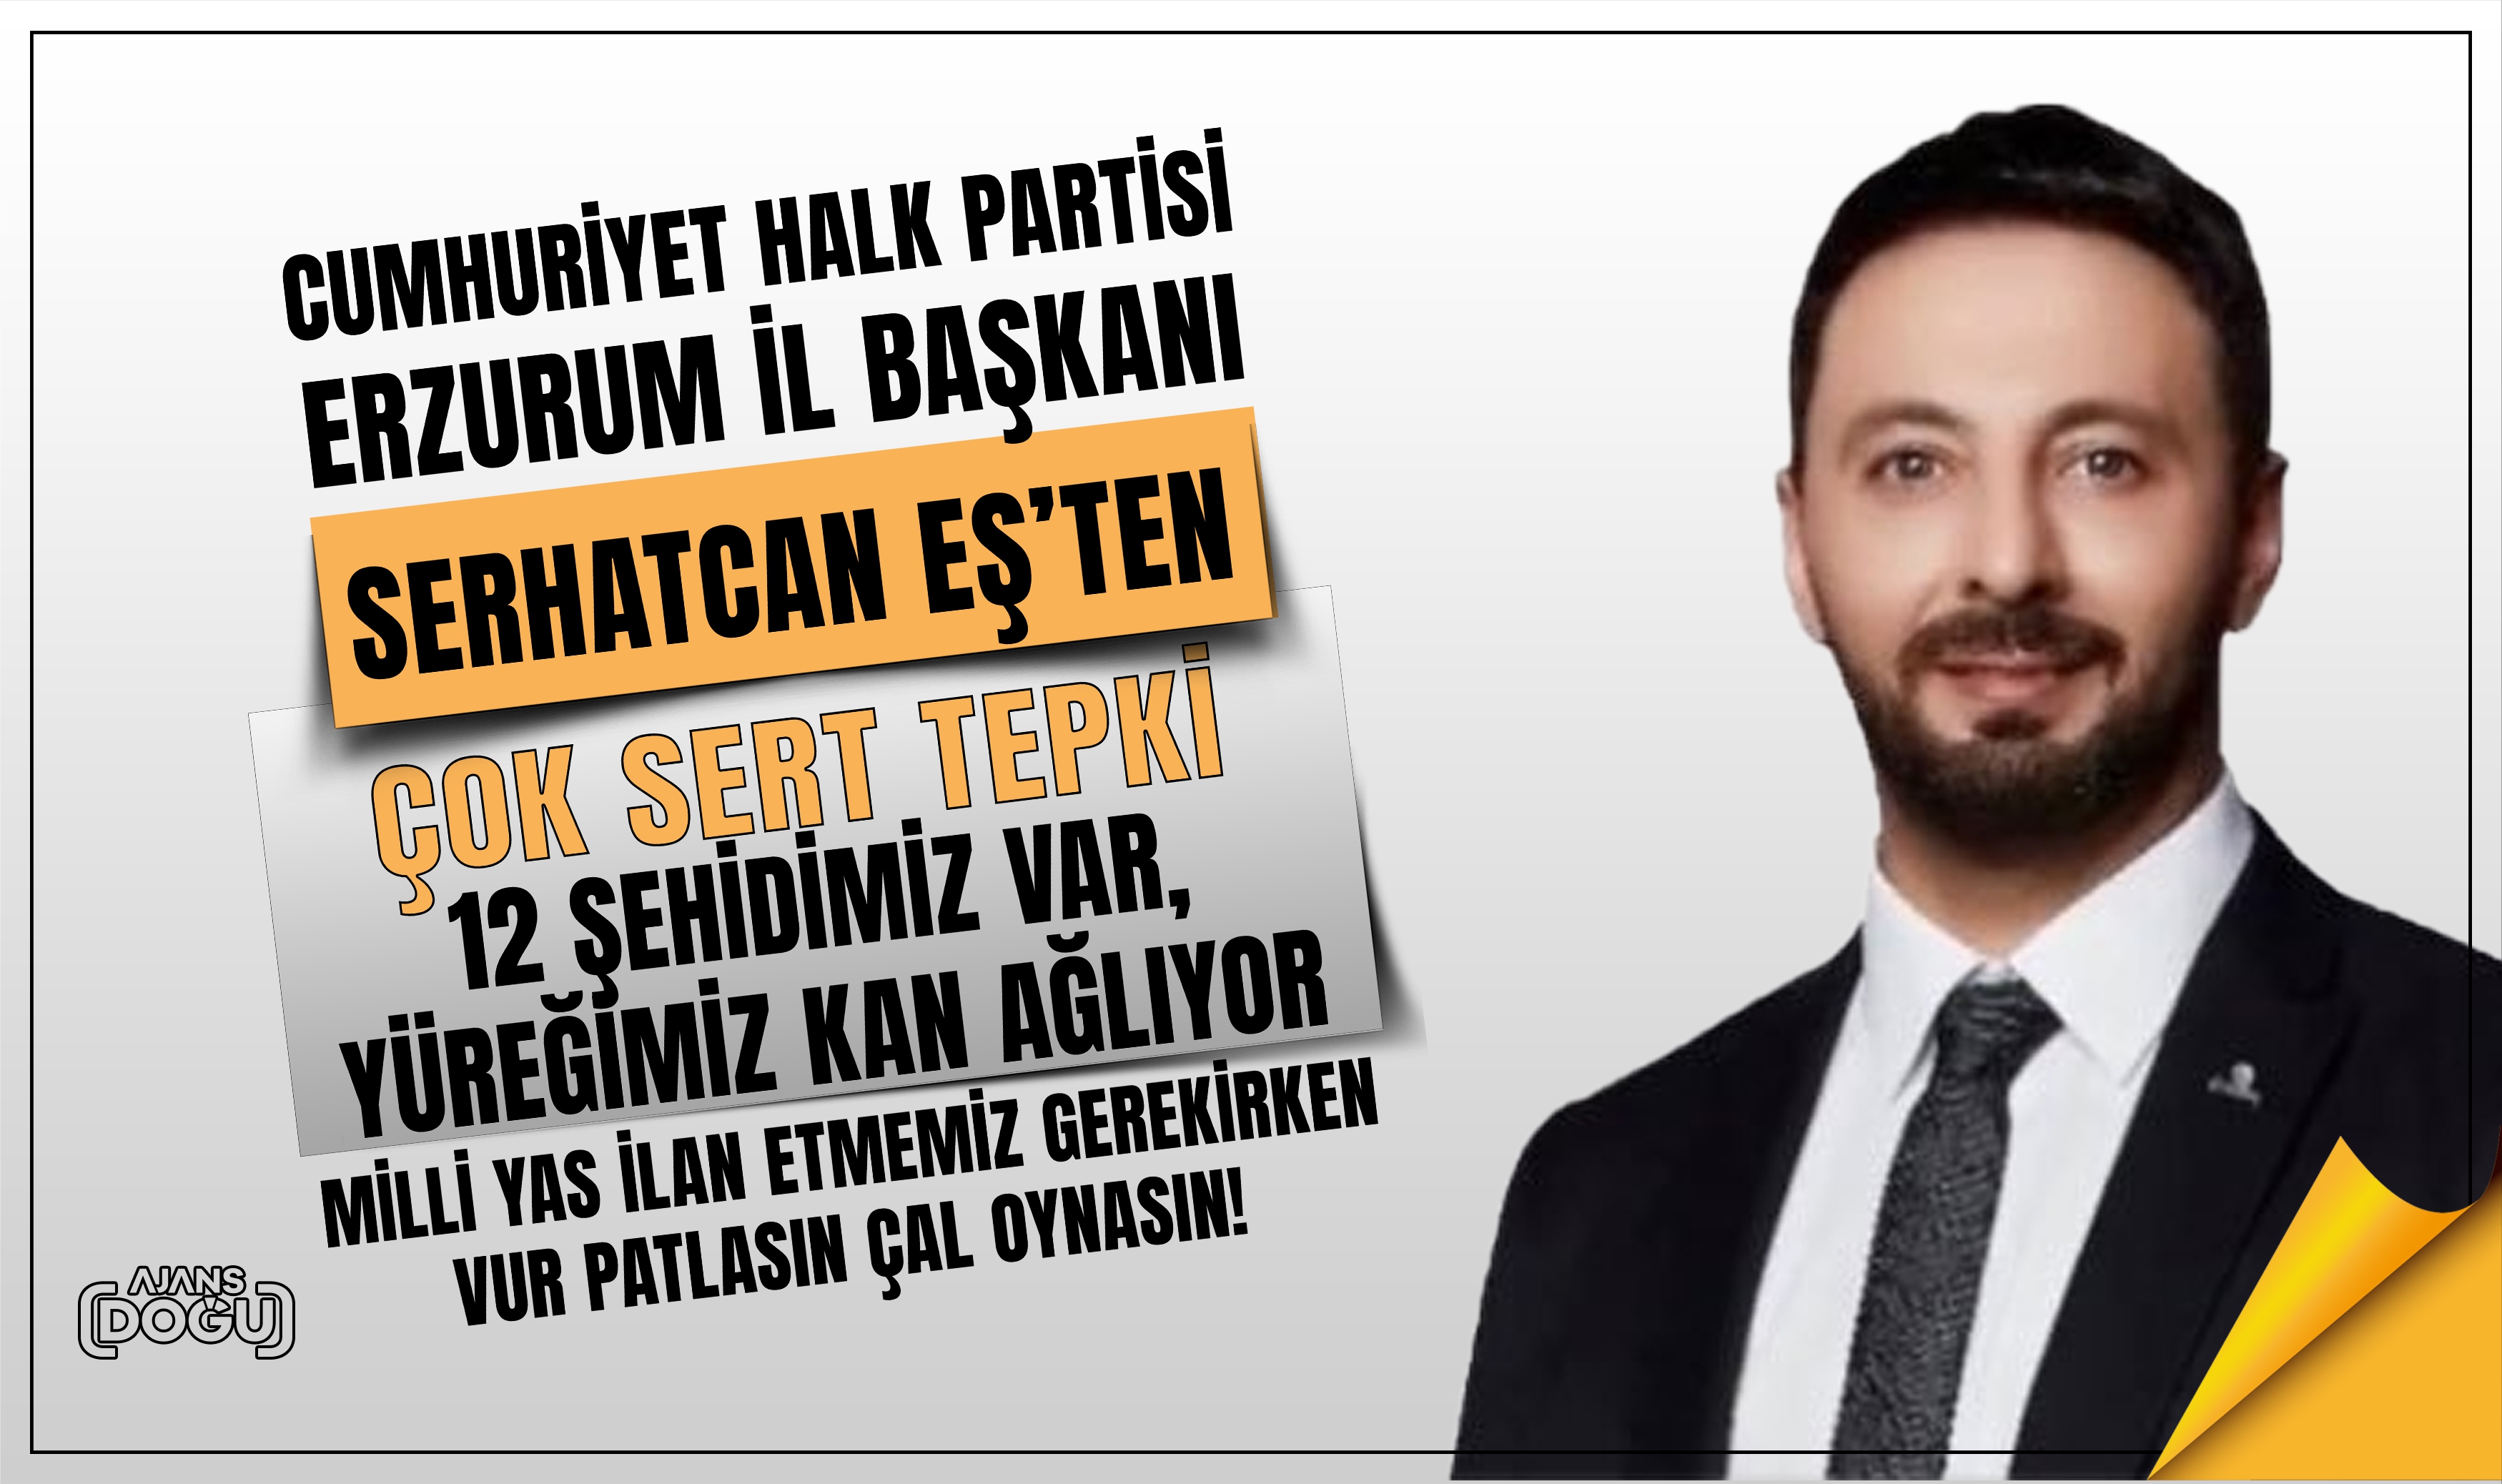 CHP Erzurum İl Başkanı Eş'ten çok sert tepki